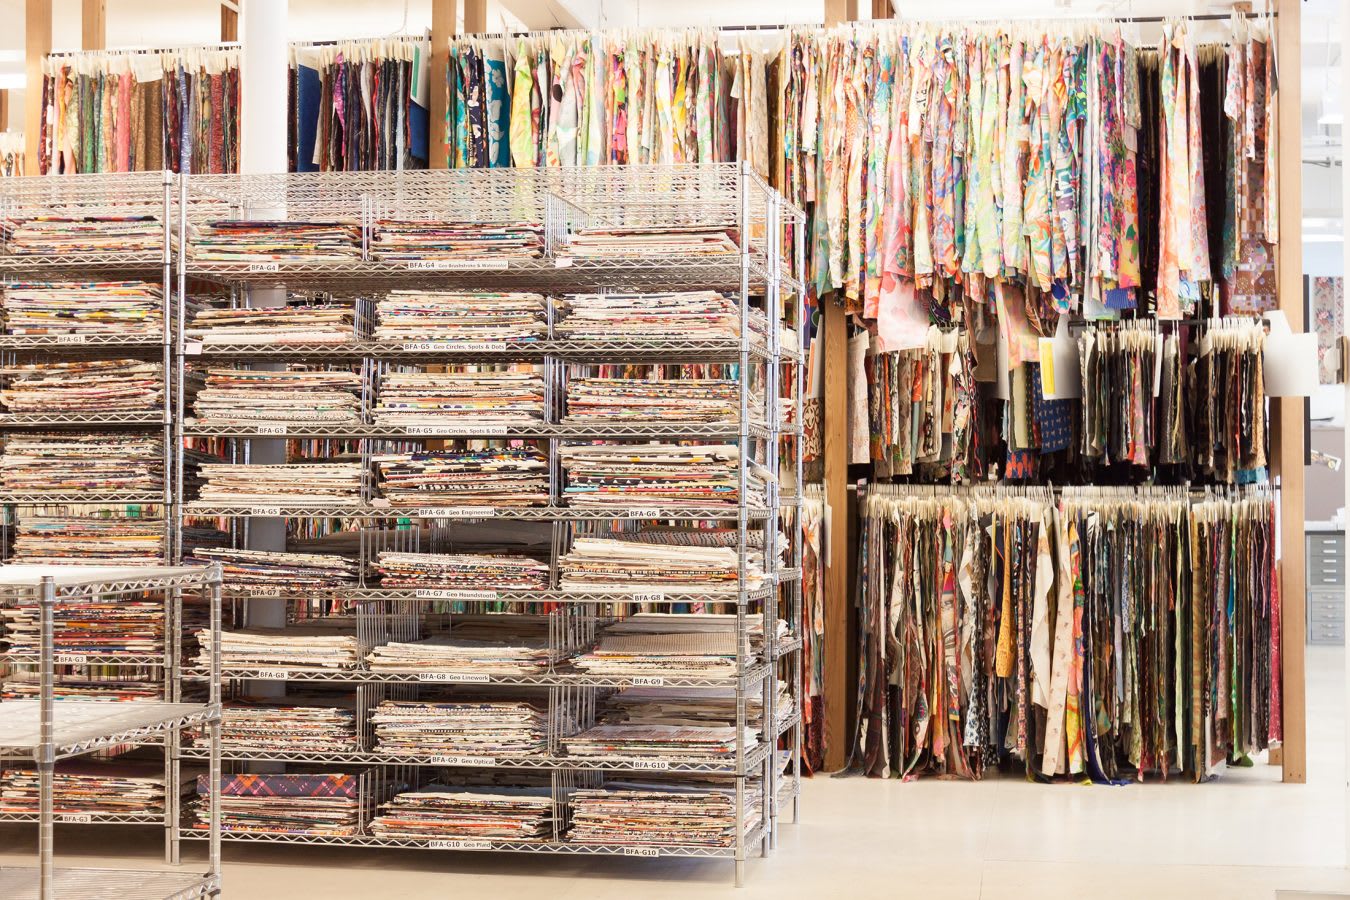 The Design Library: A Textile Treasure Trove